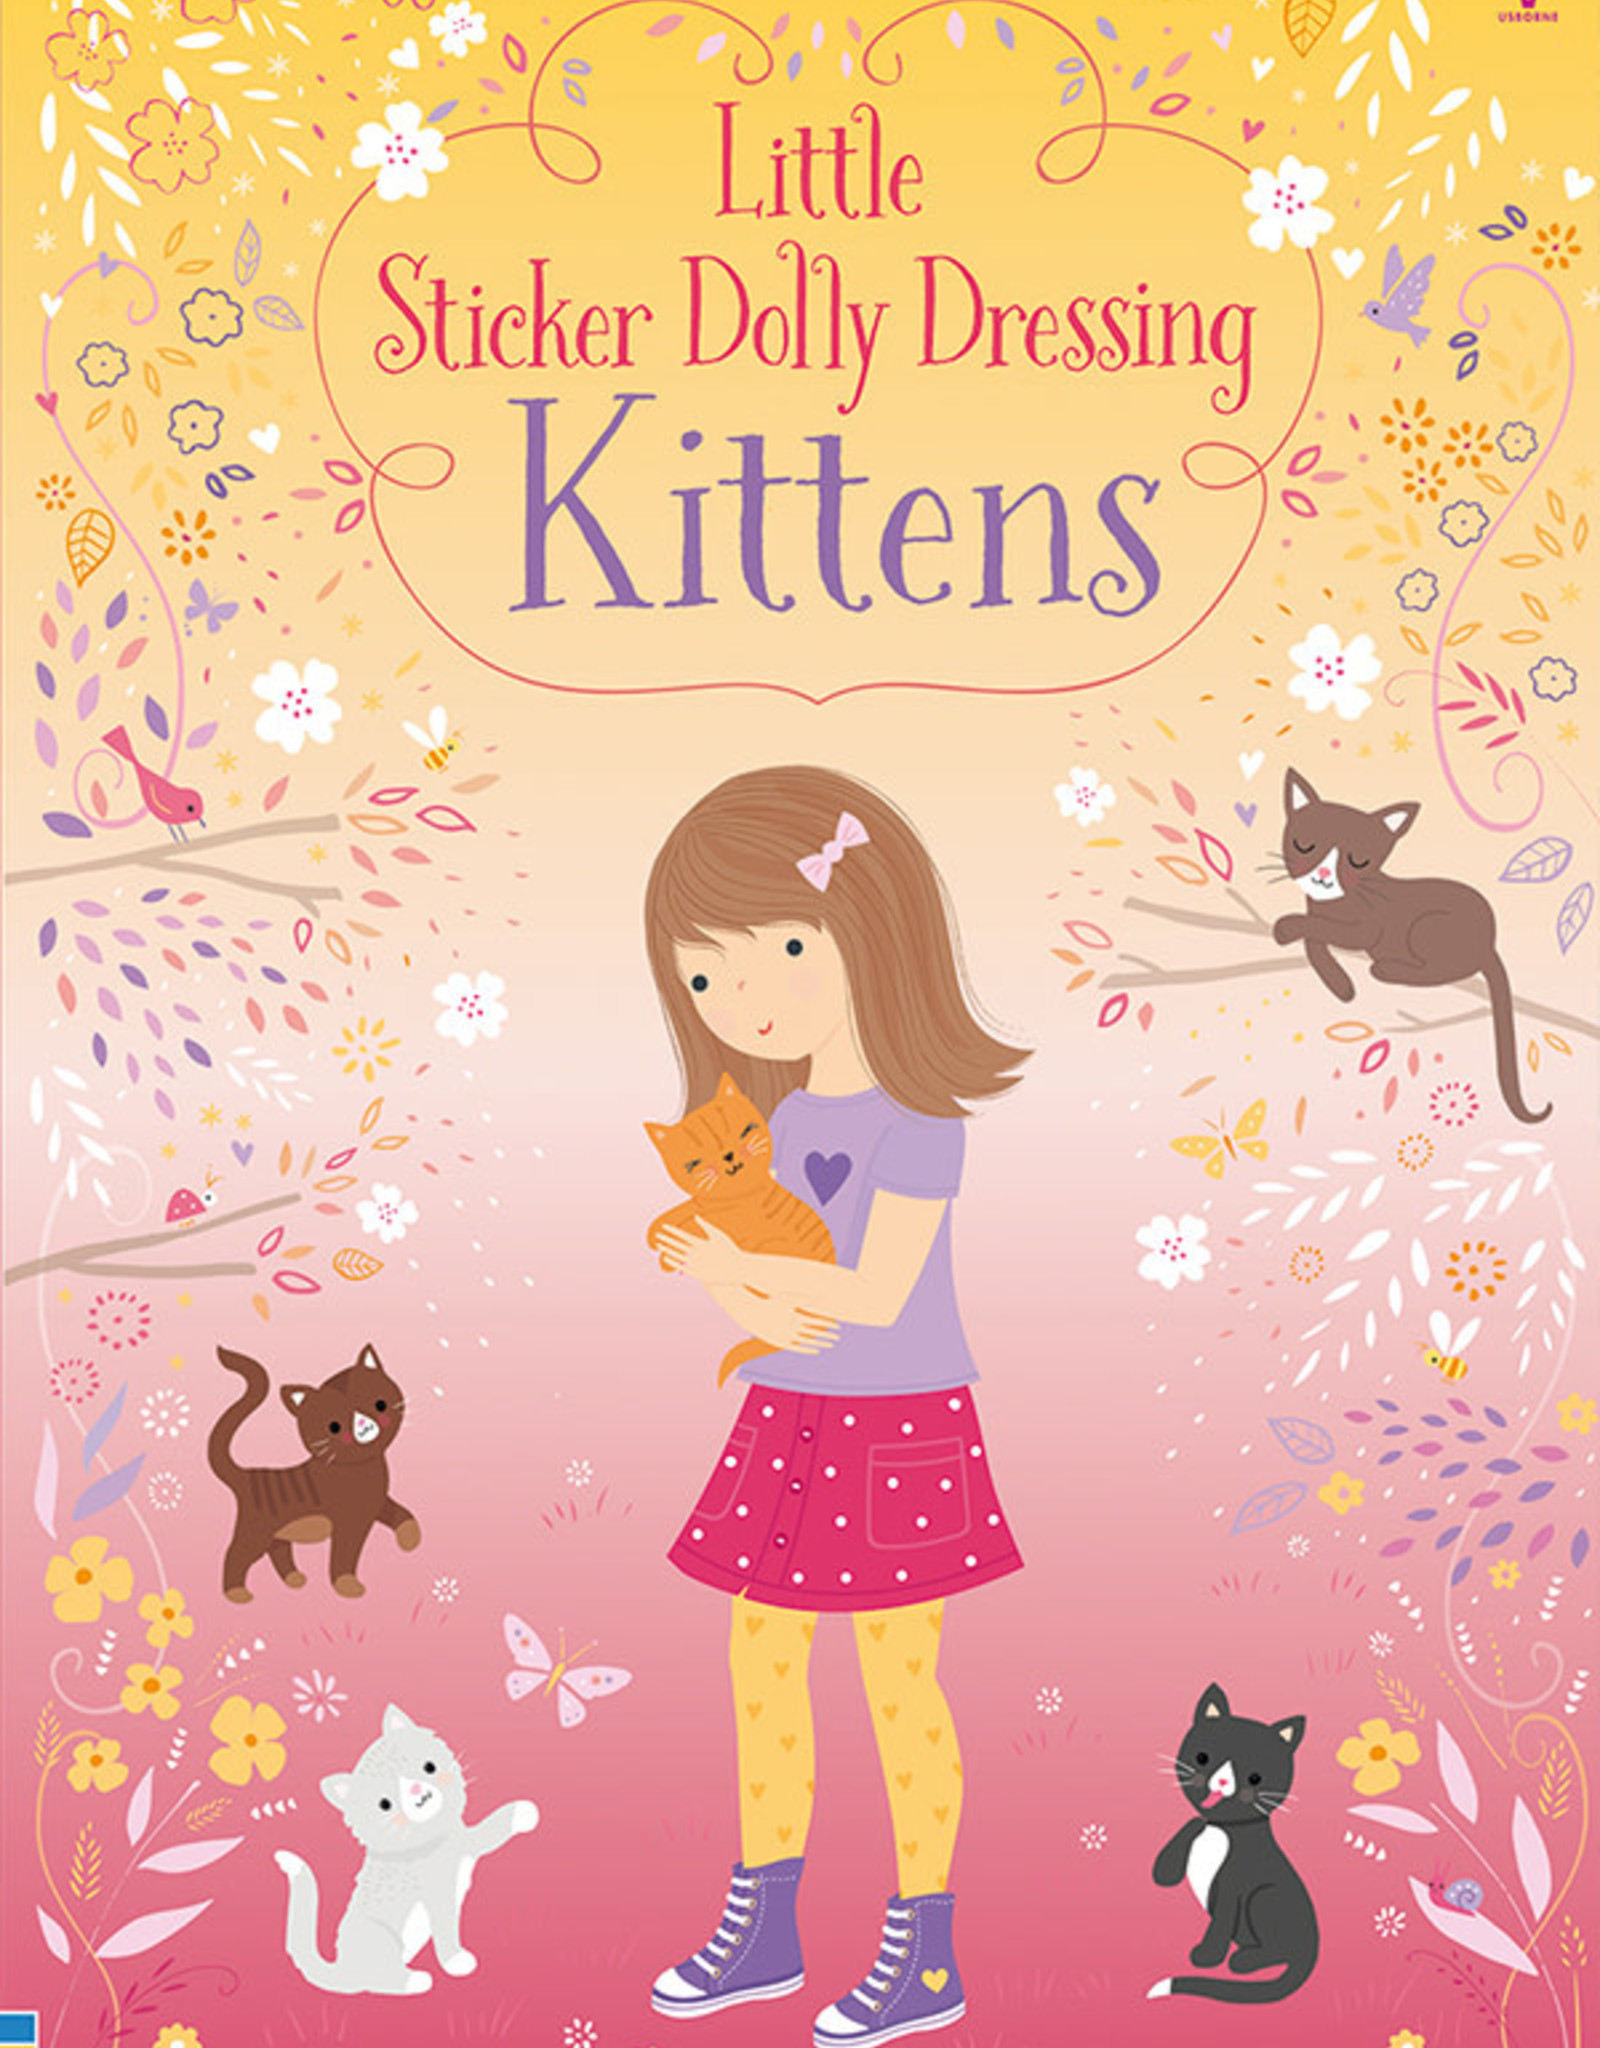 Usborne Little Sticker Dolly Dressing Kittens